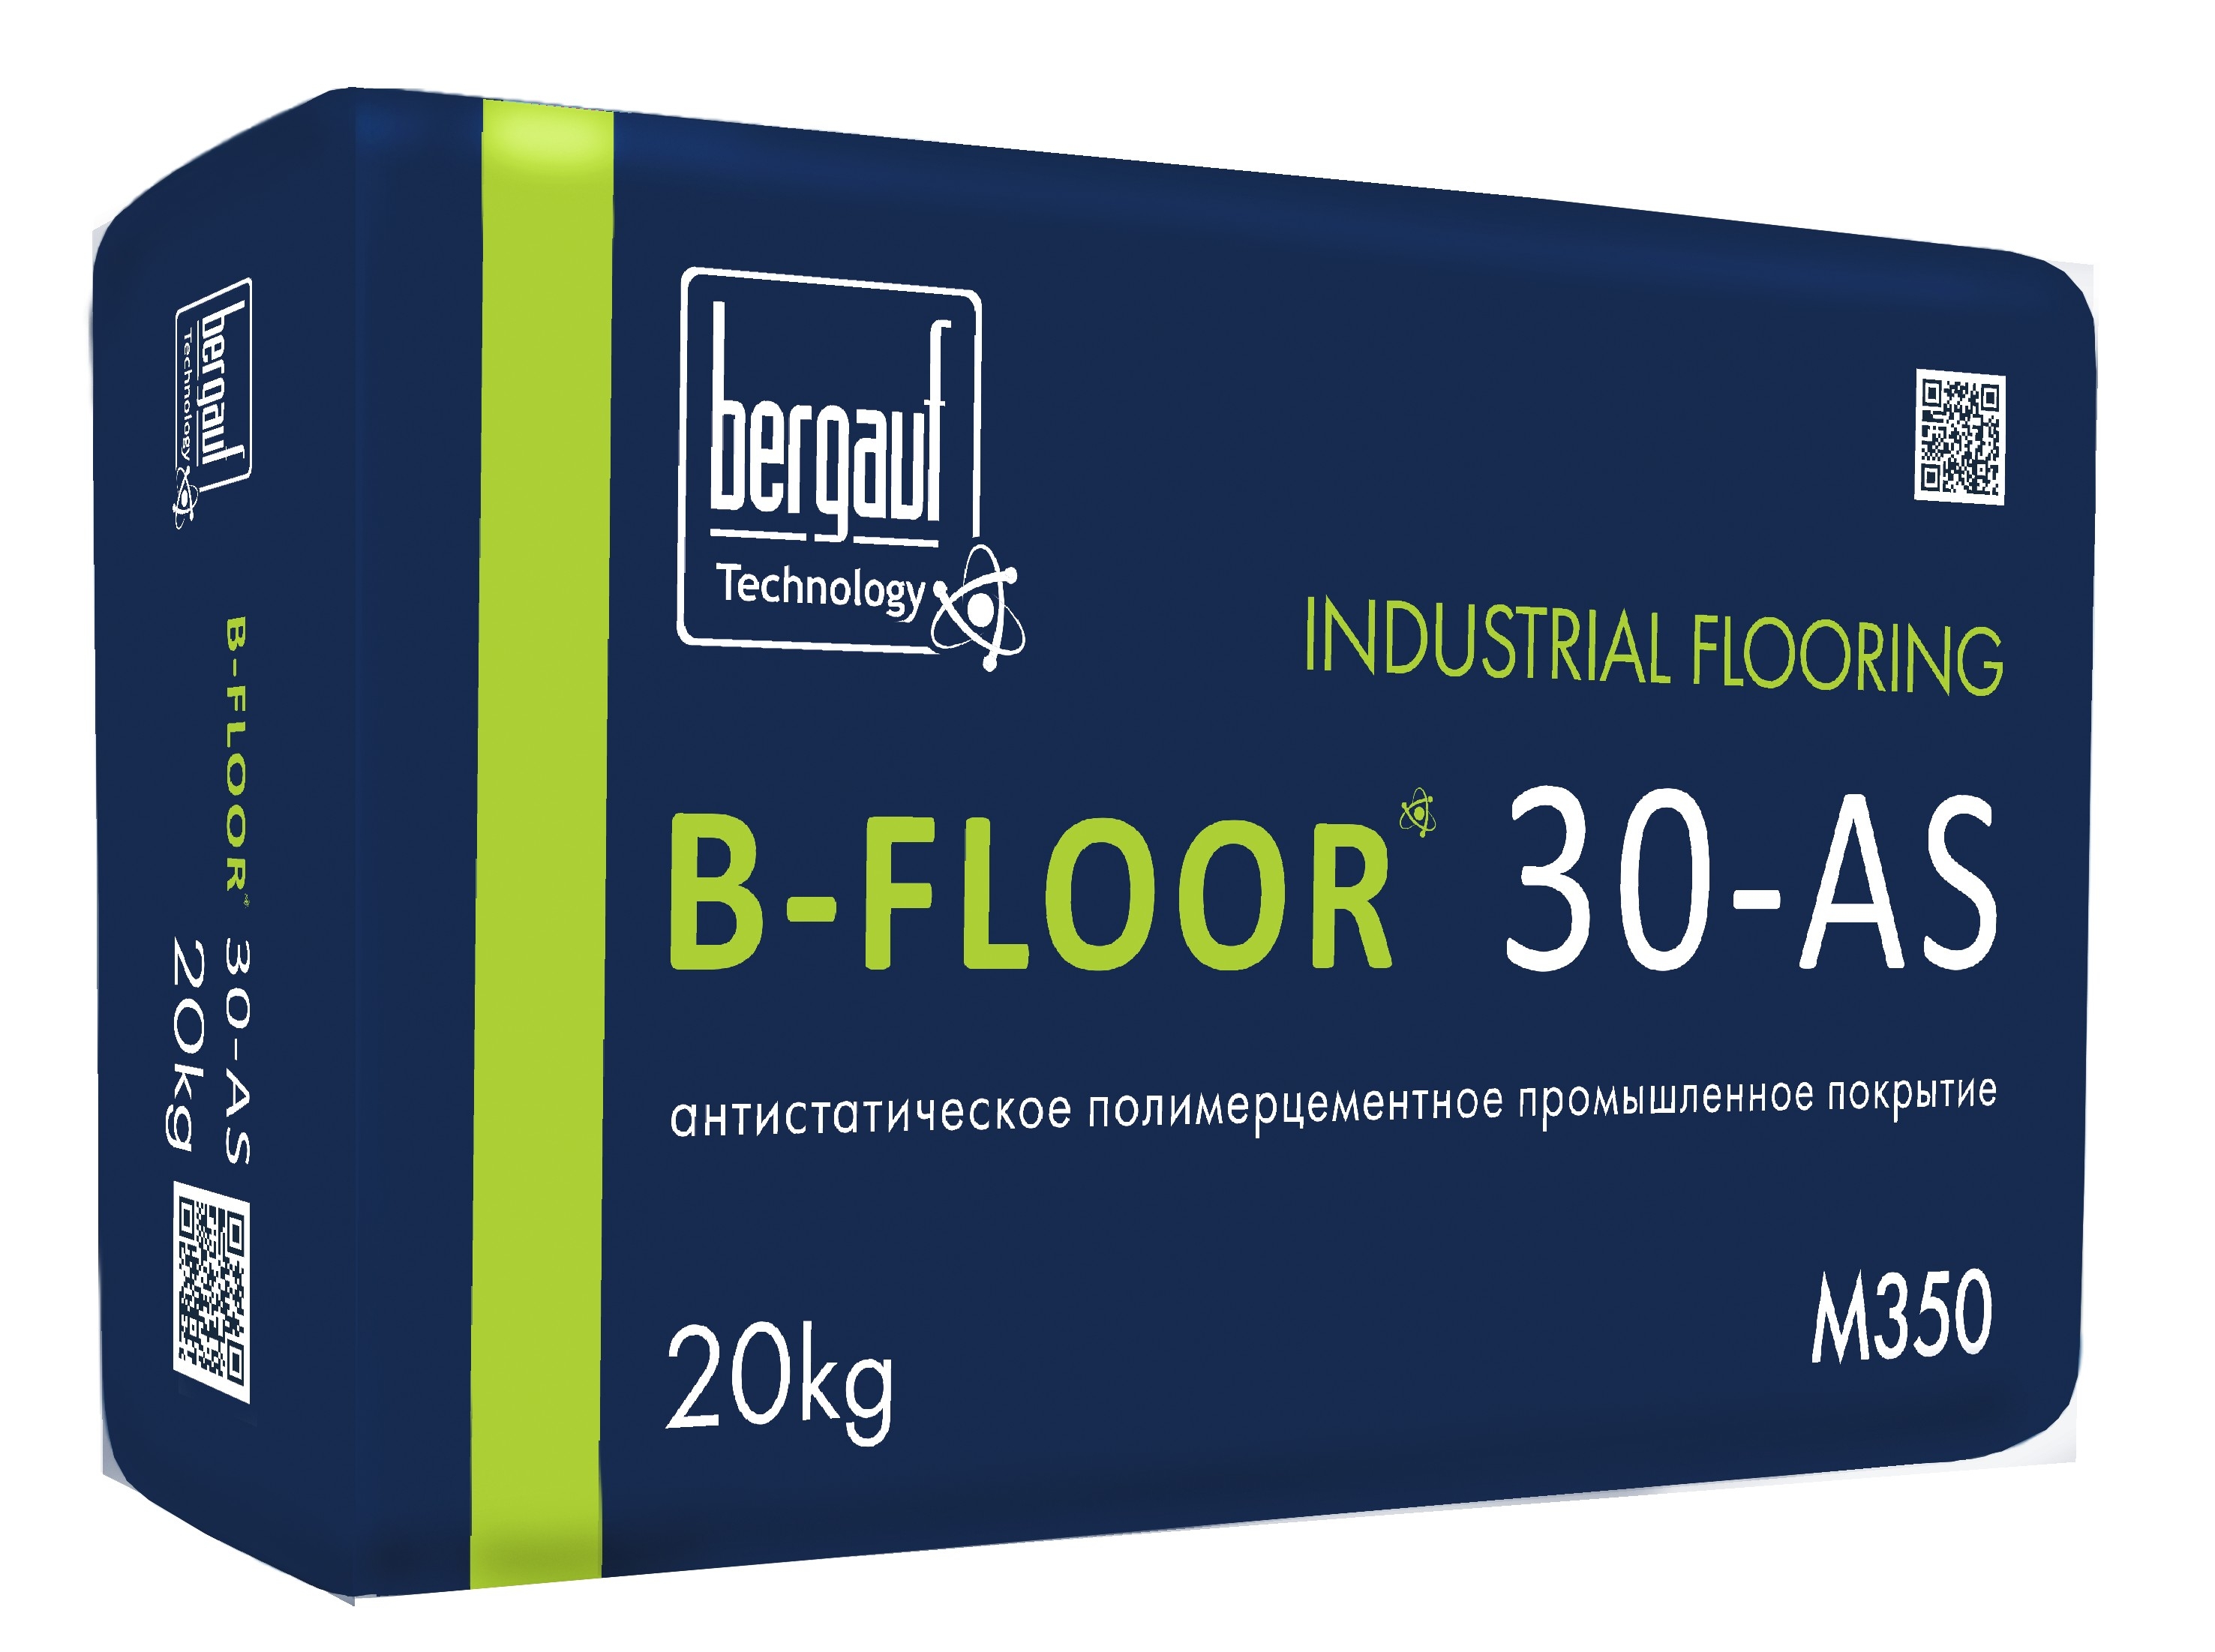 B-Floor 30-AS